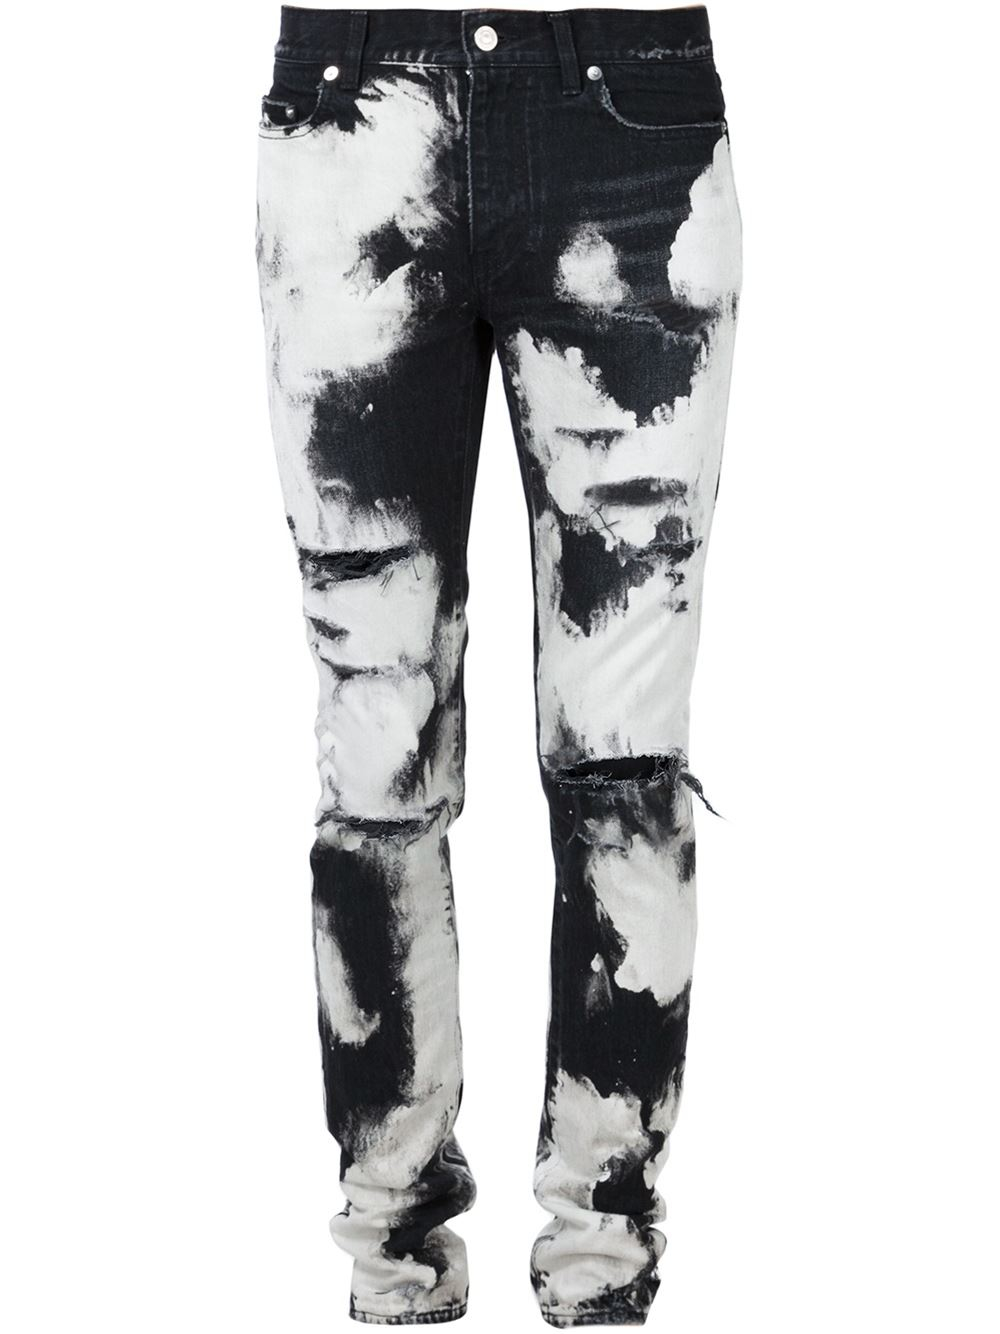 Tie Dye Pants Harem Pants Lounge Pants Organic Cotton - Etsy | Tie dye  pants, Festival pants, Harem pants